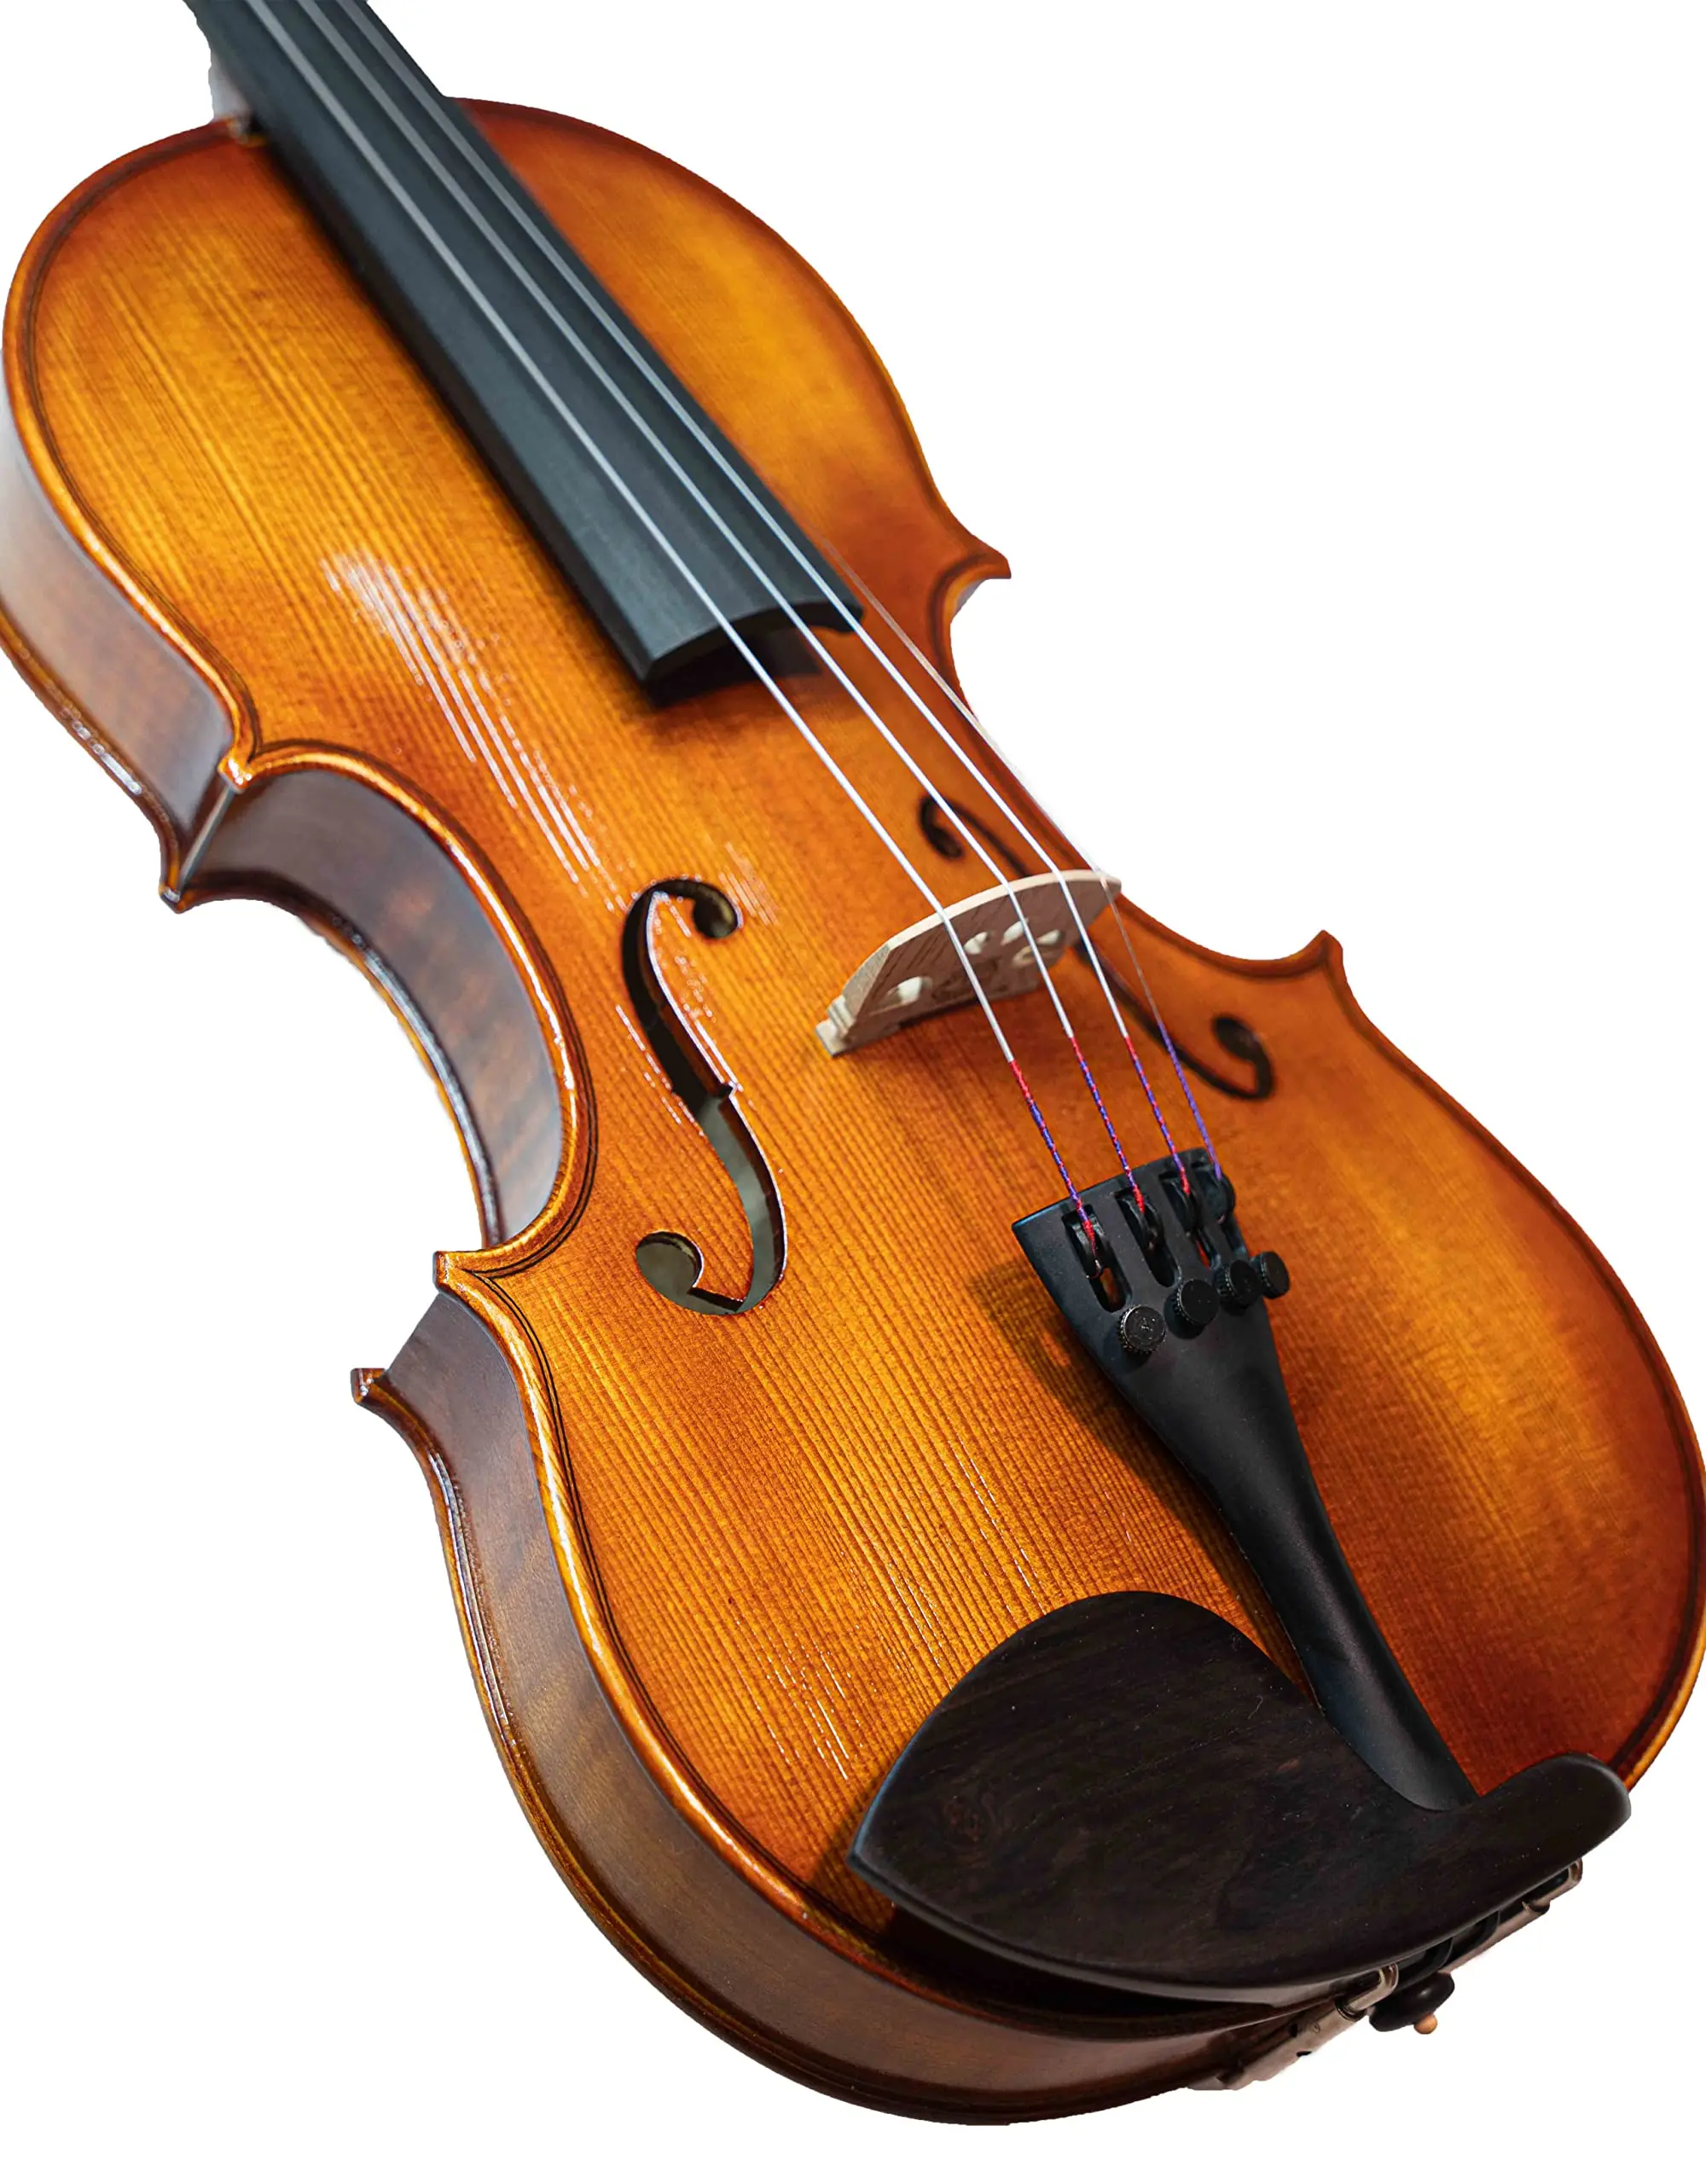 handmade violin - Are violins still hand made